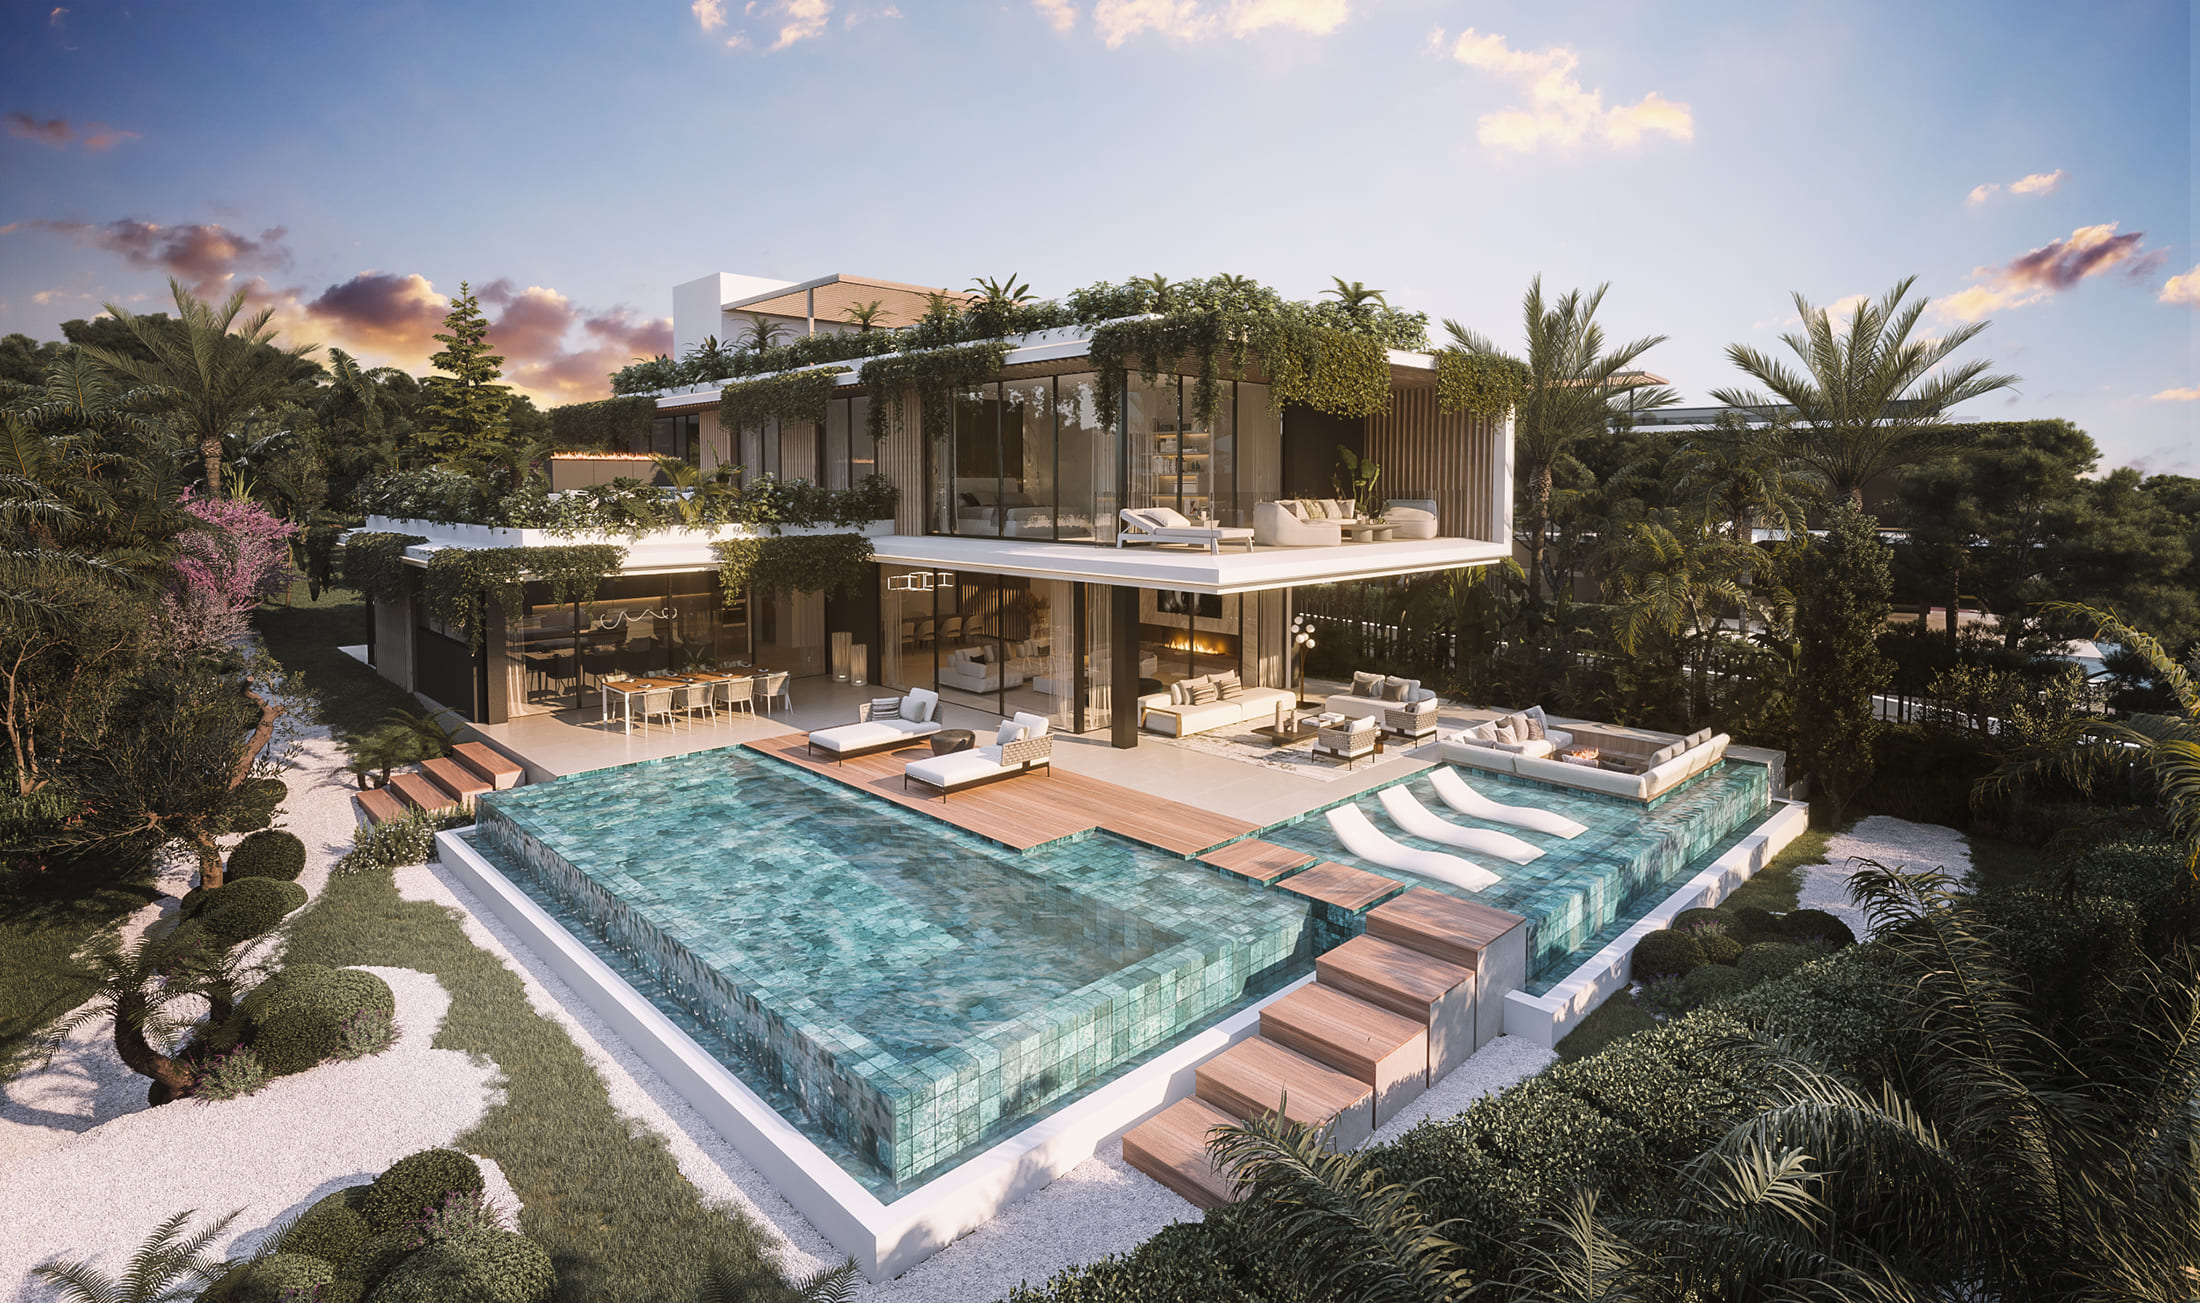 ViVi Real Estate: Espectacular Villa en venta en Marbella con vistas panorámicas al mar.